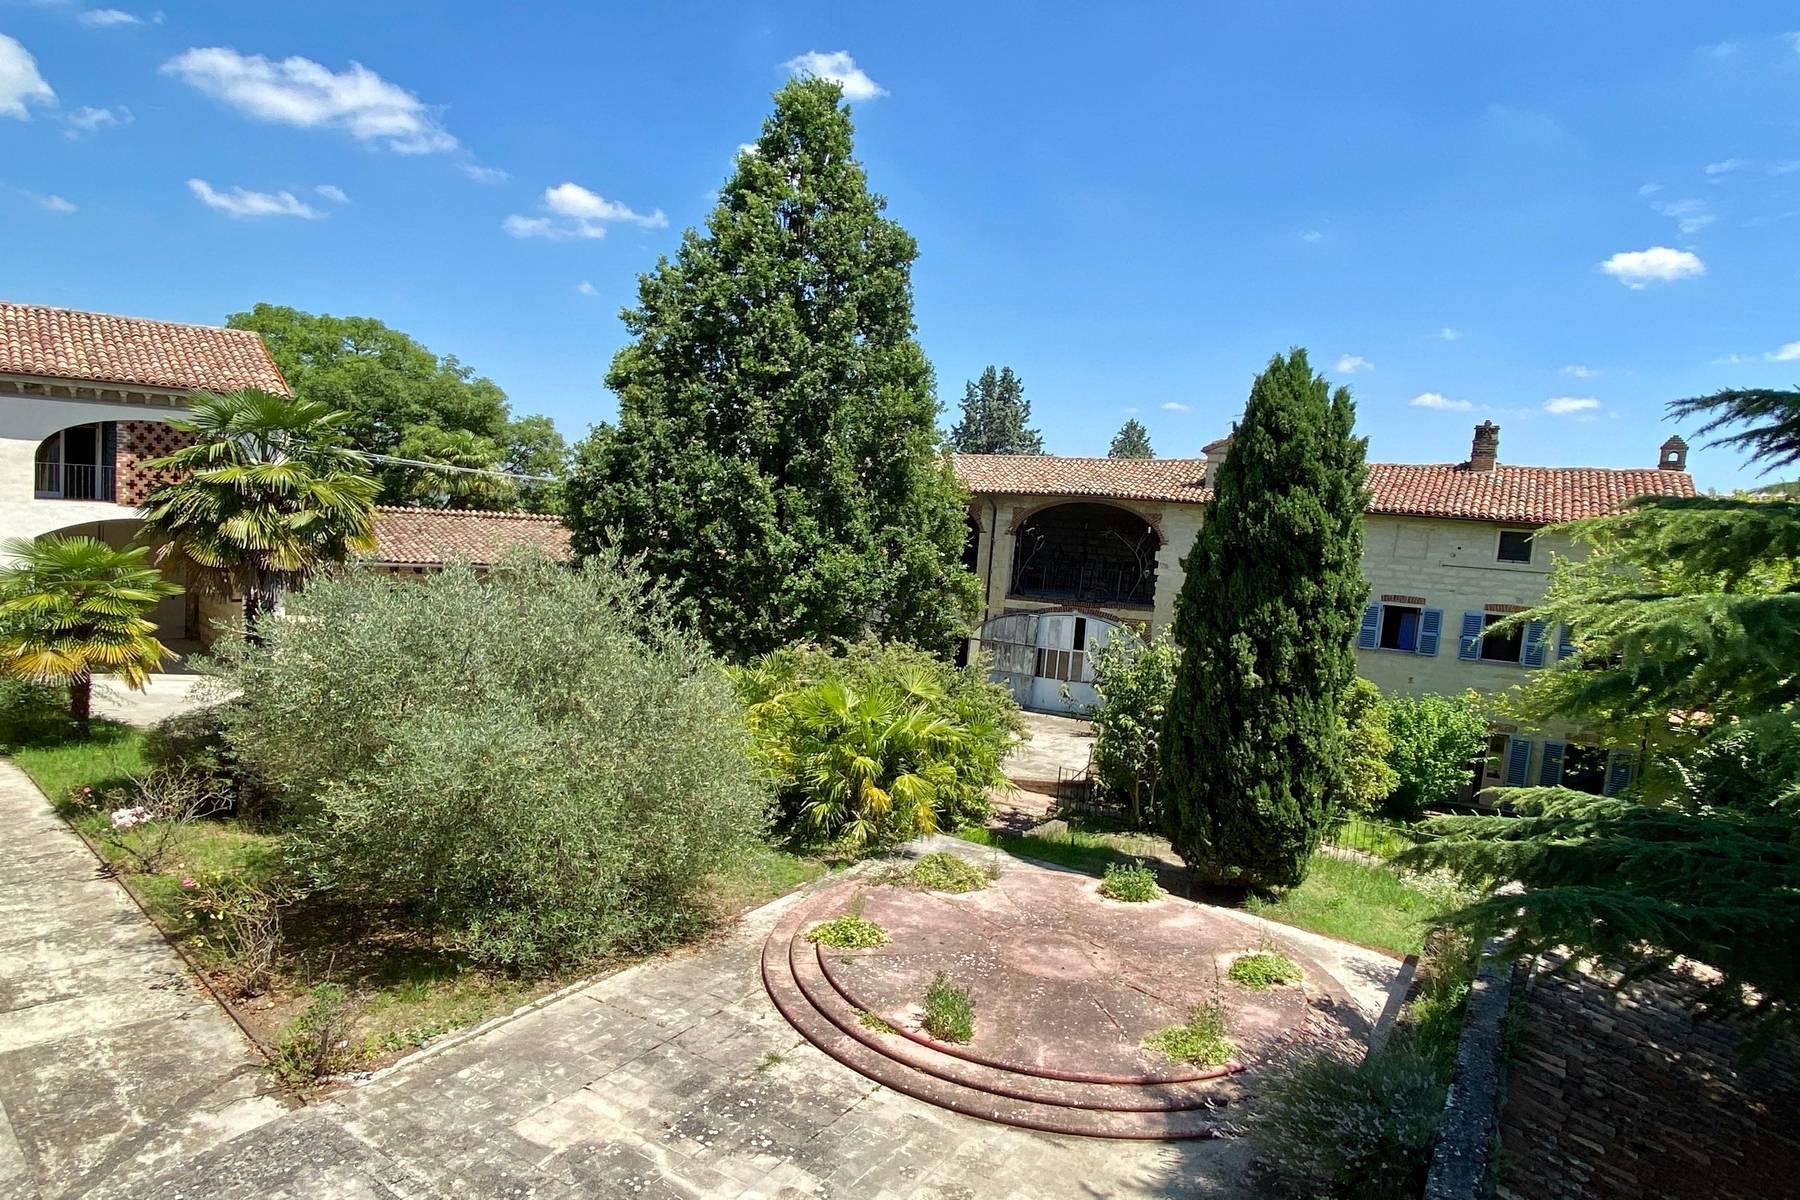 Affascinante complesso residenziale inserito in un pittoresco Borgo del Monferrato - 27